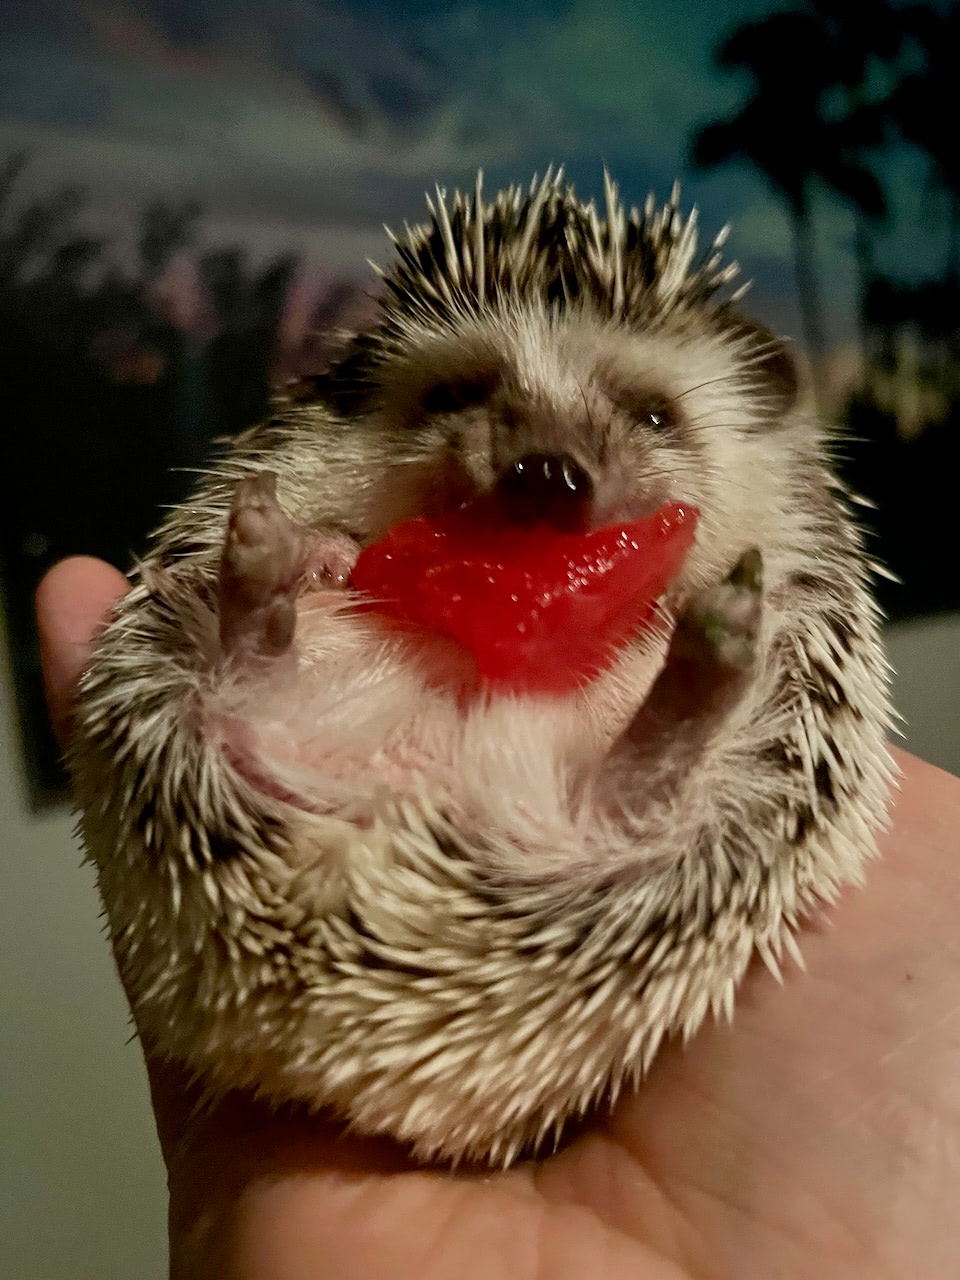 A pygmy hedgehog enjoying a piece of watermelon